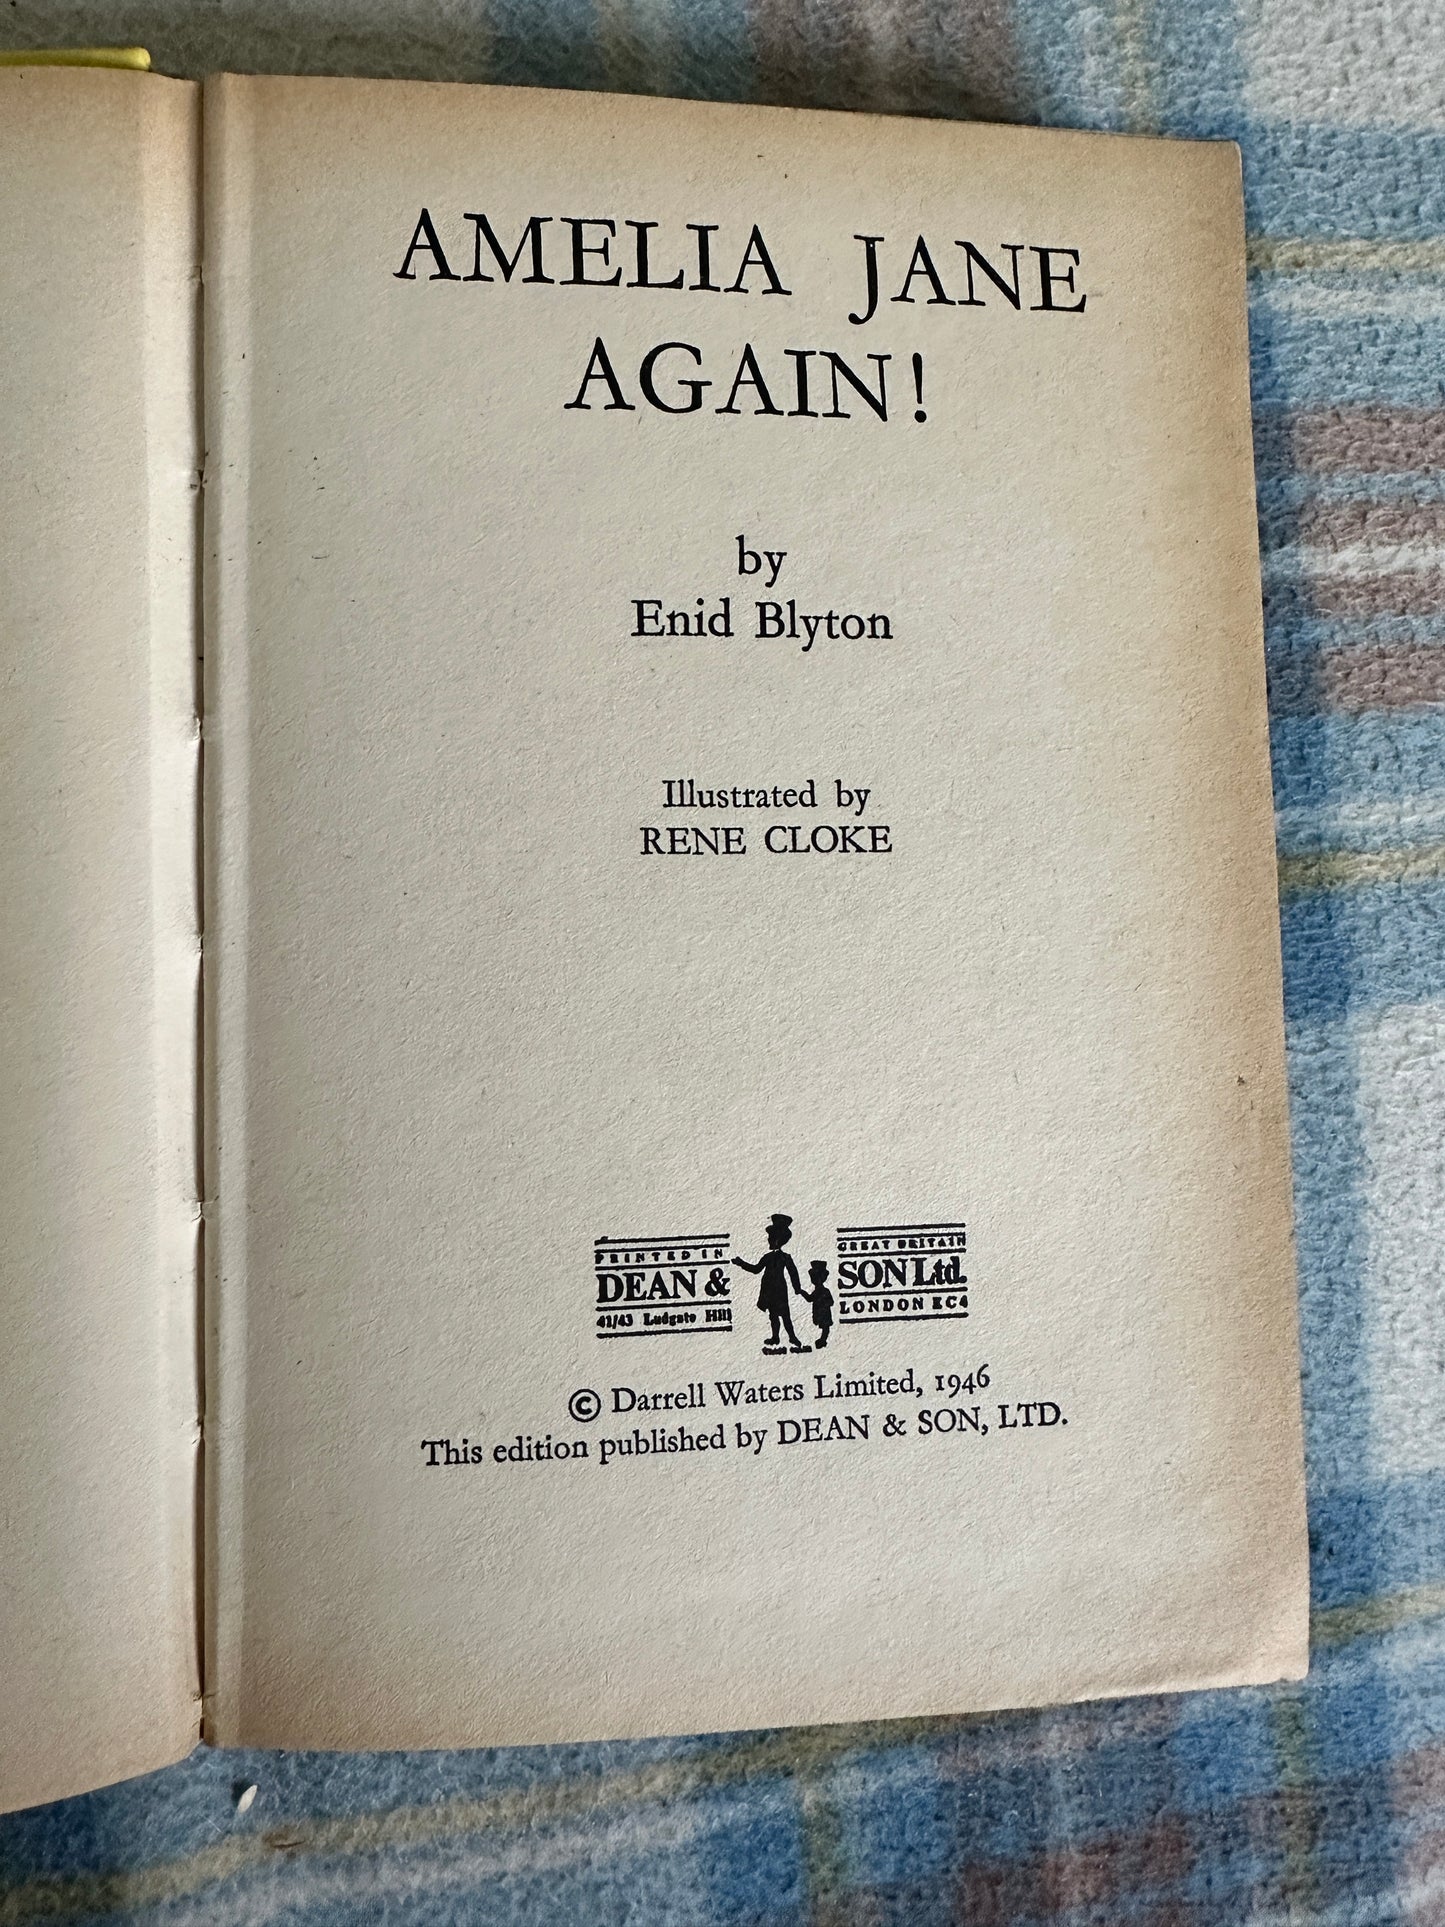 1972 Amelia Jane Again - Enid Blyton(Rene Cloke illustration) Dean & Son Ltd